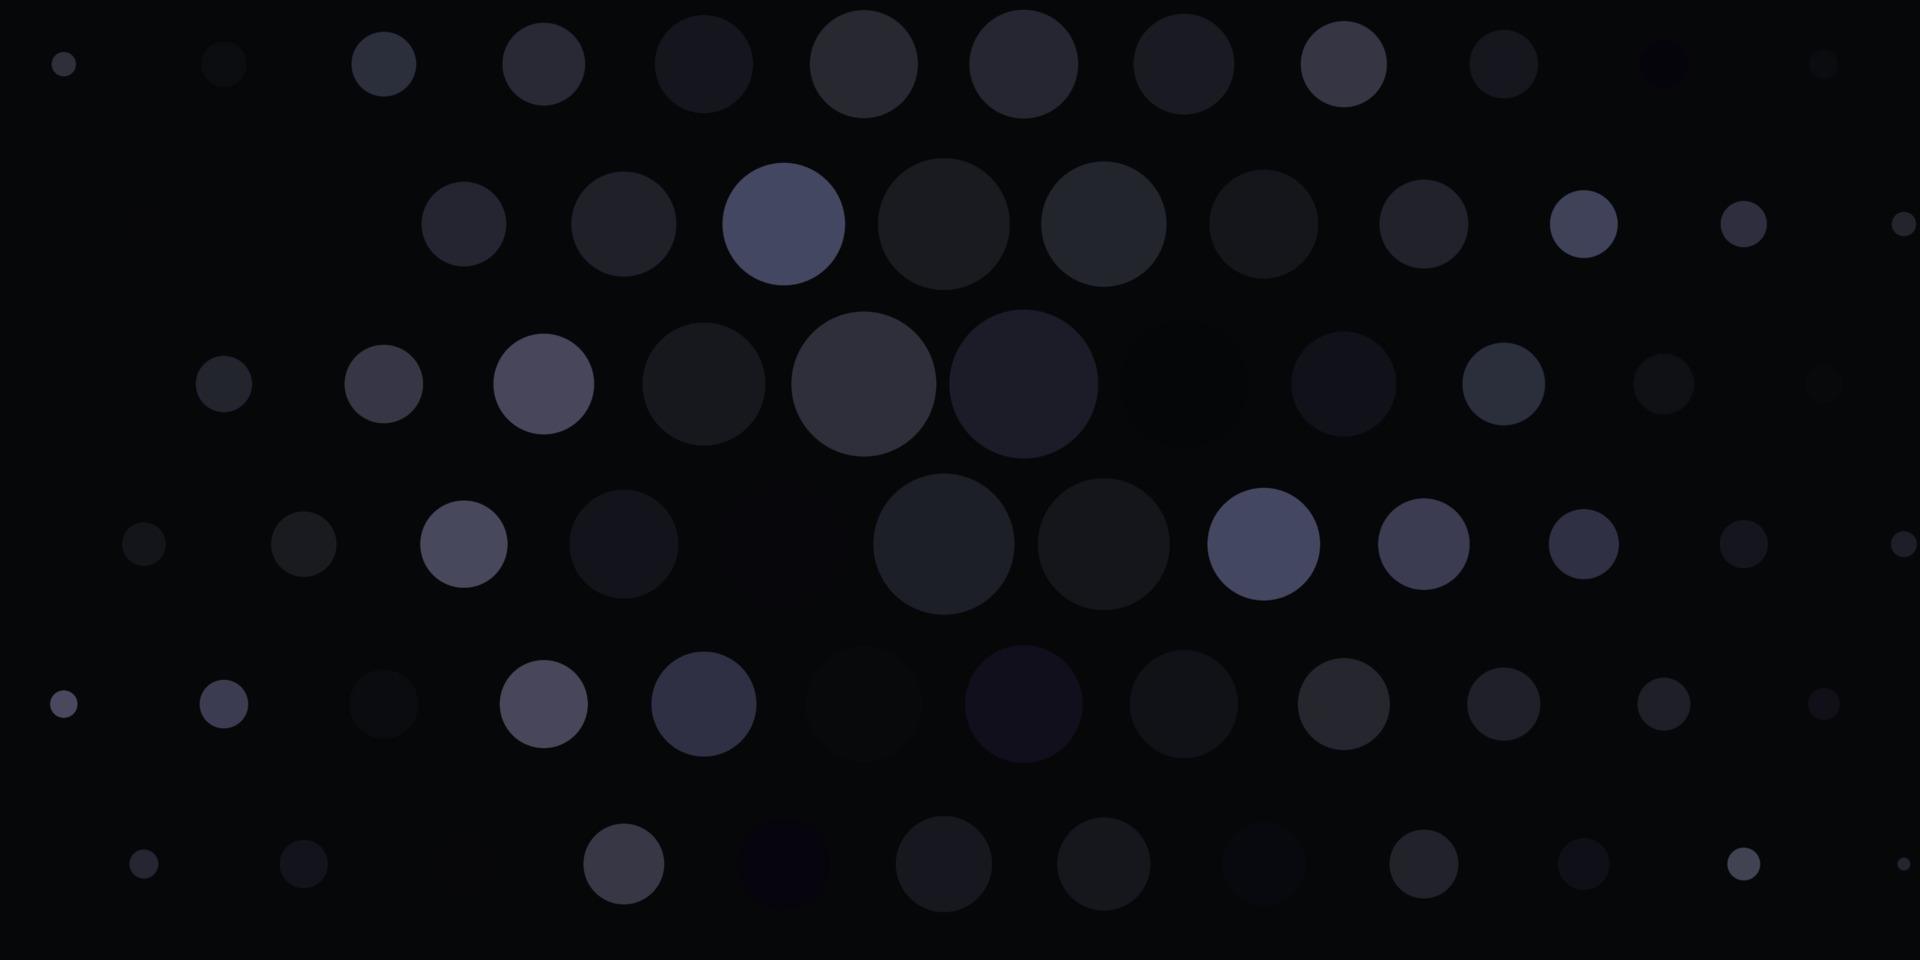 patrón de vector gris claro con esferas.